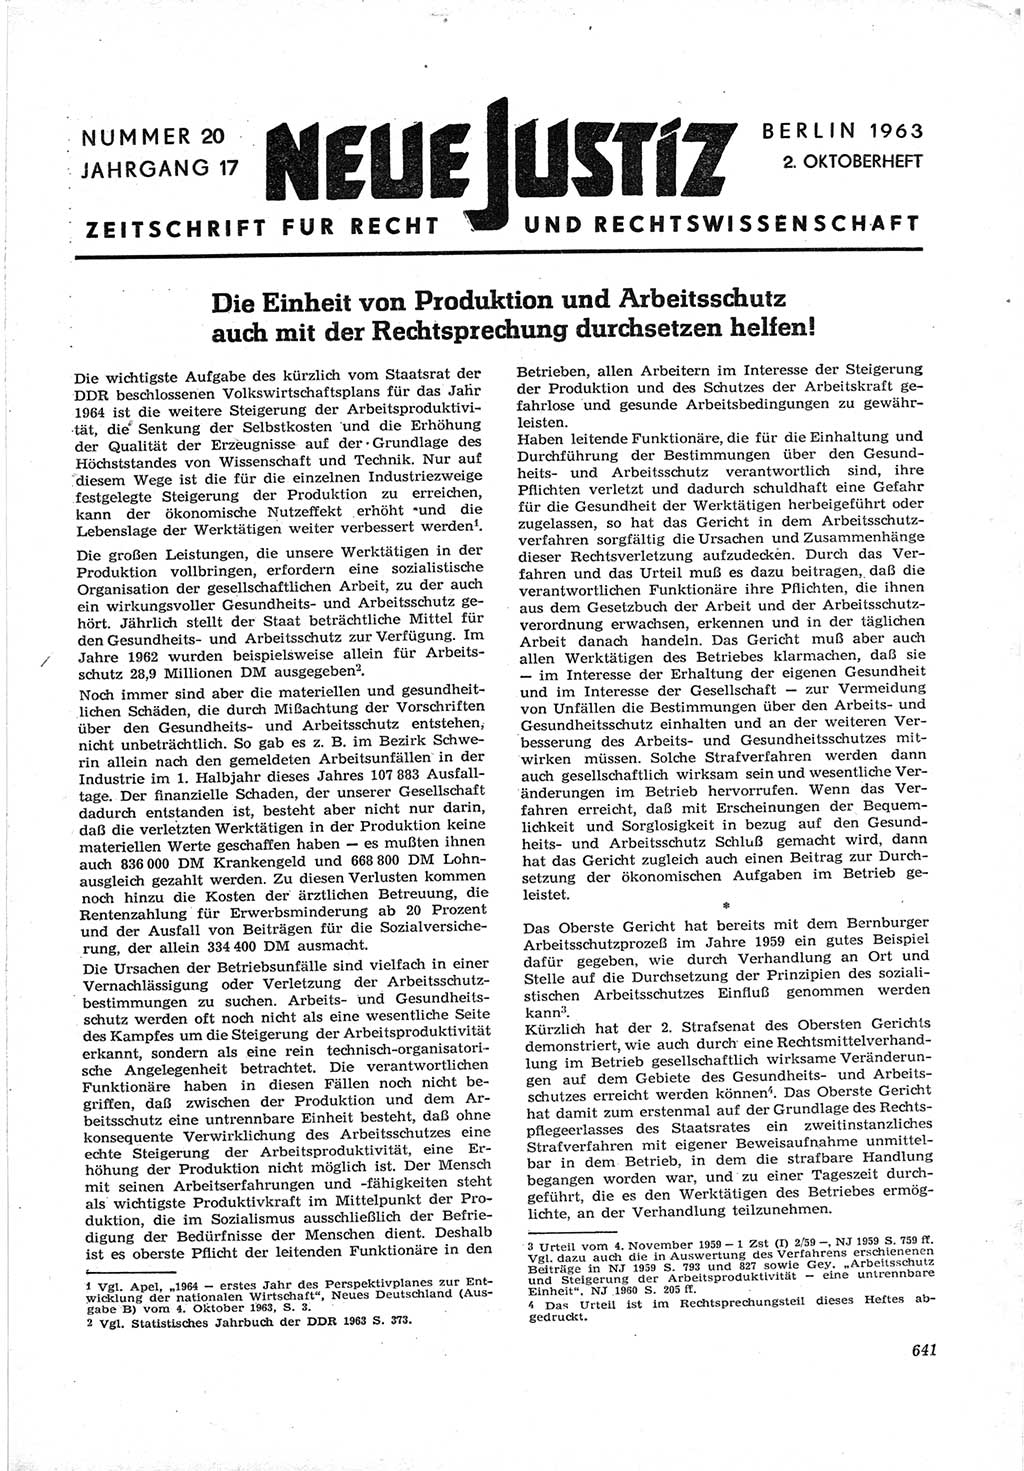 Neue Justiz (NJ), Zeitschrift für Recht und Rechtswissenschaft [Deutsche Demokratische Republik (DDR)], 17. Jahrgang 1963, Seite 641 (NJ DDR 1963, S. 641)